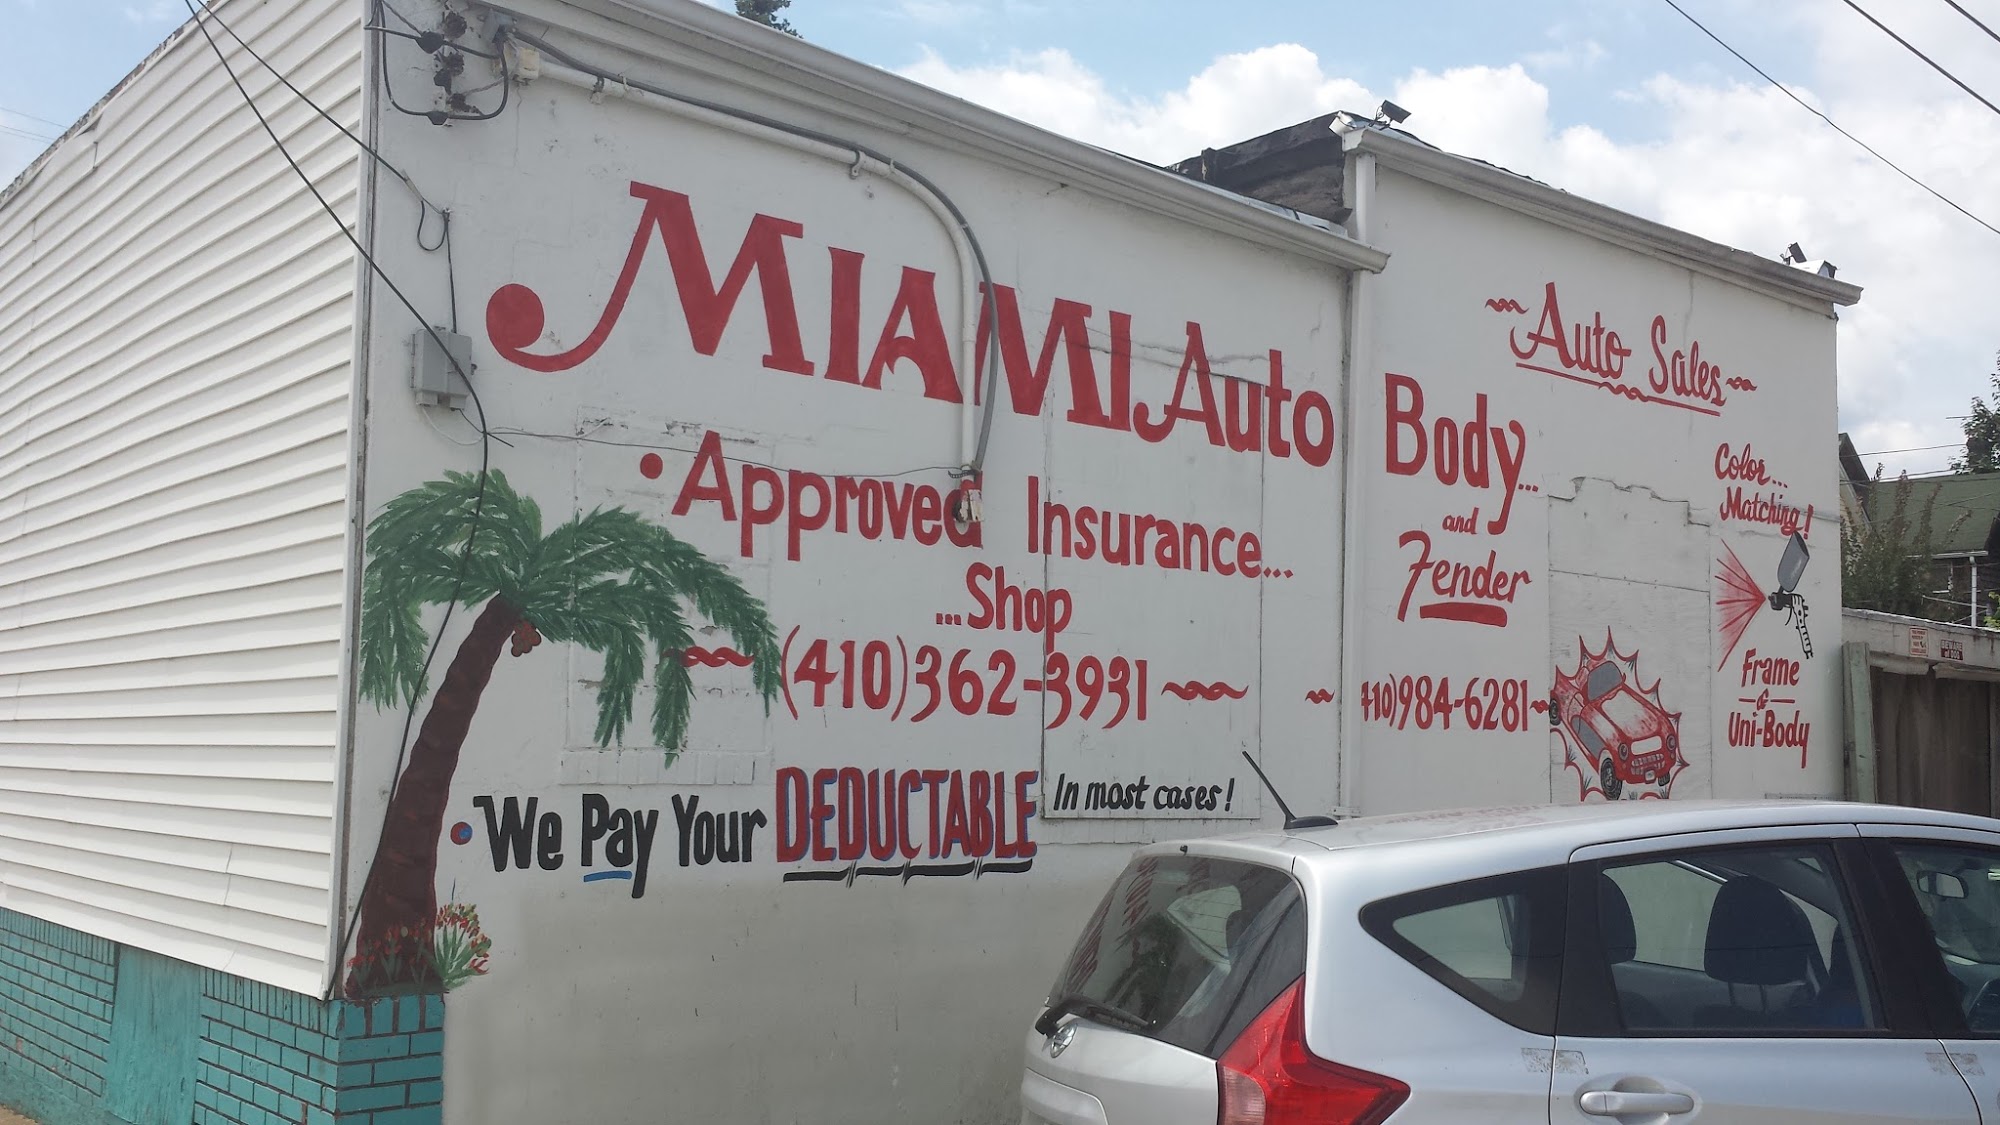 Miami Auto Sales